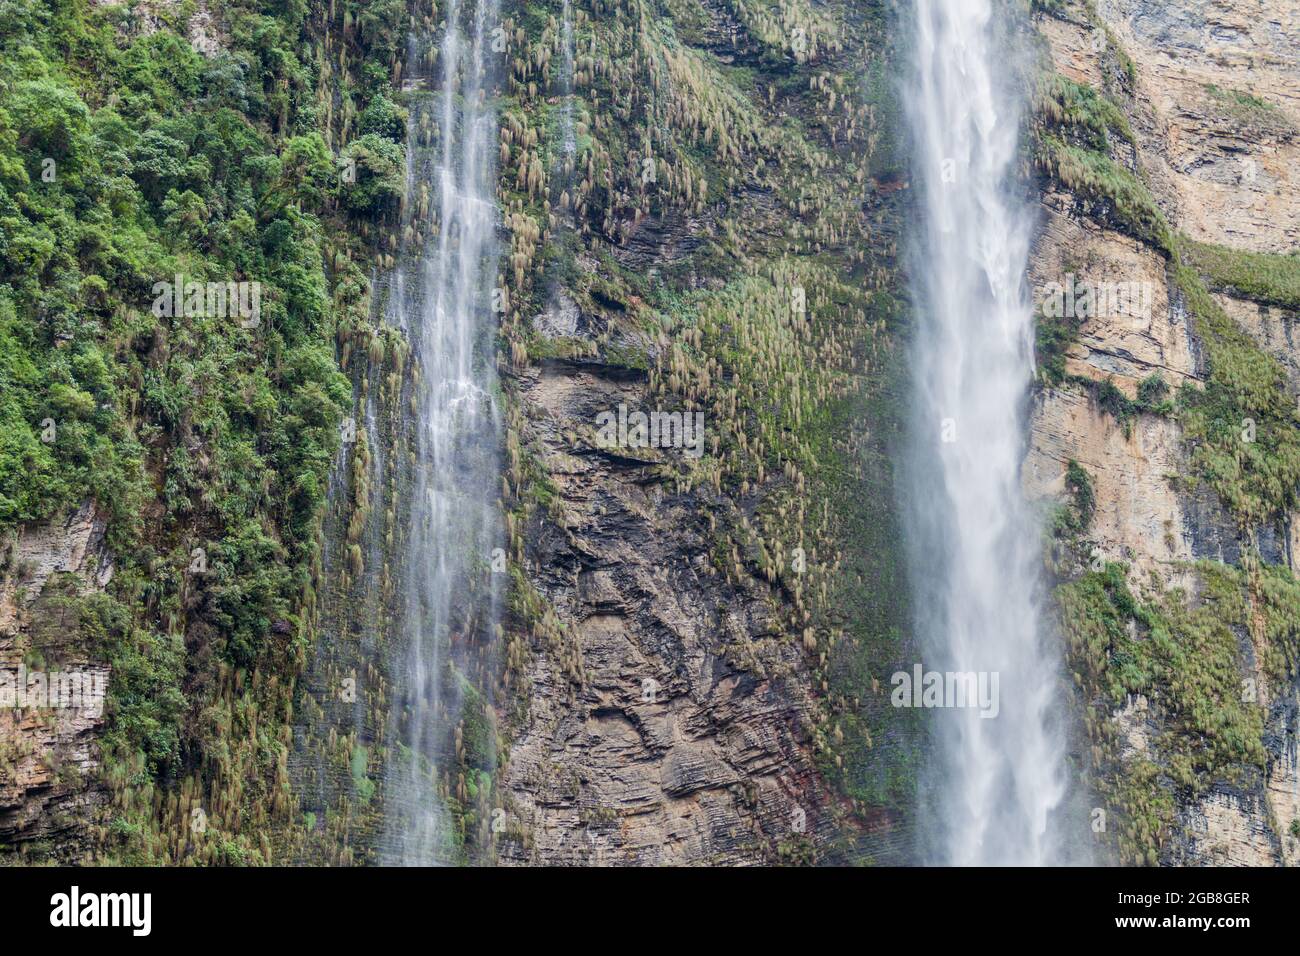 Catarata de Gocta - einer der höchsten Wasserfälle der Welt, dem Norden Perus. Stockfoto